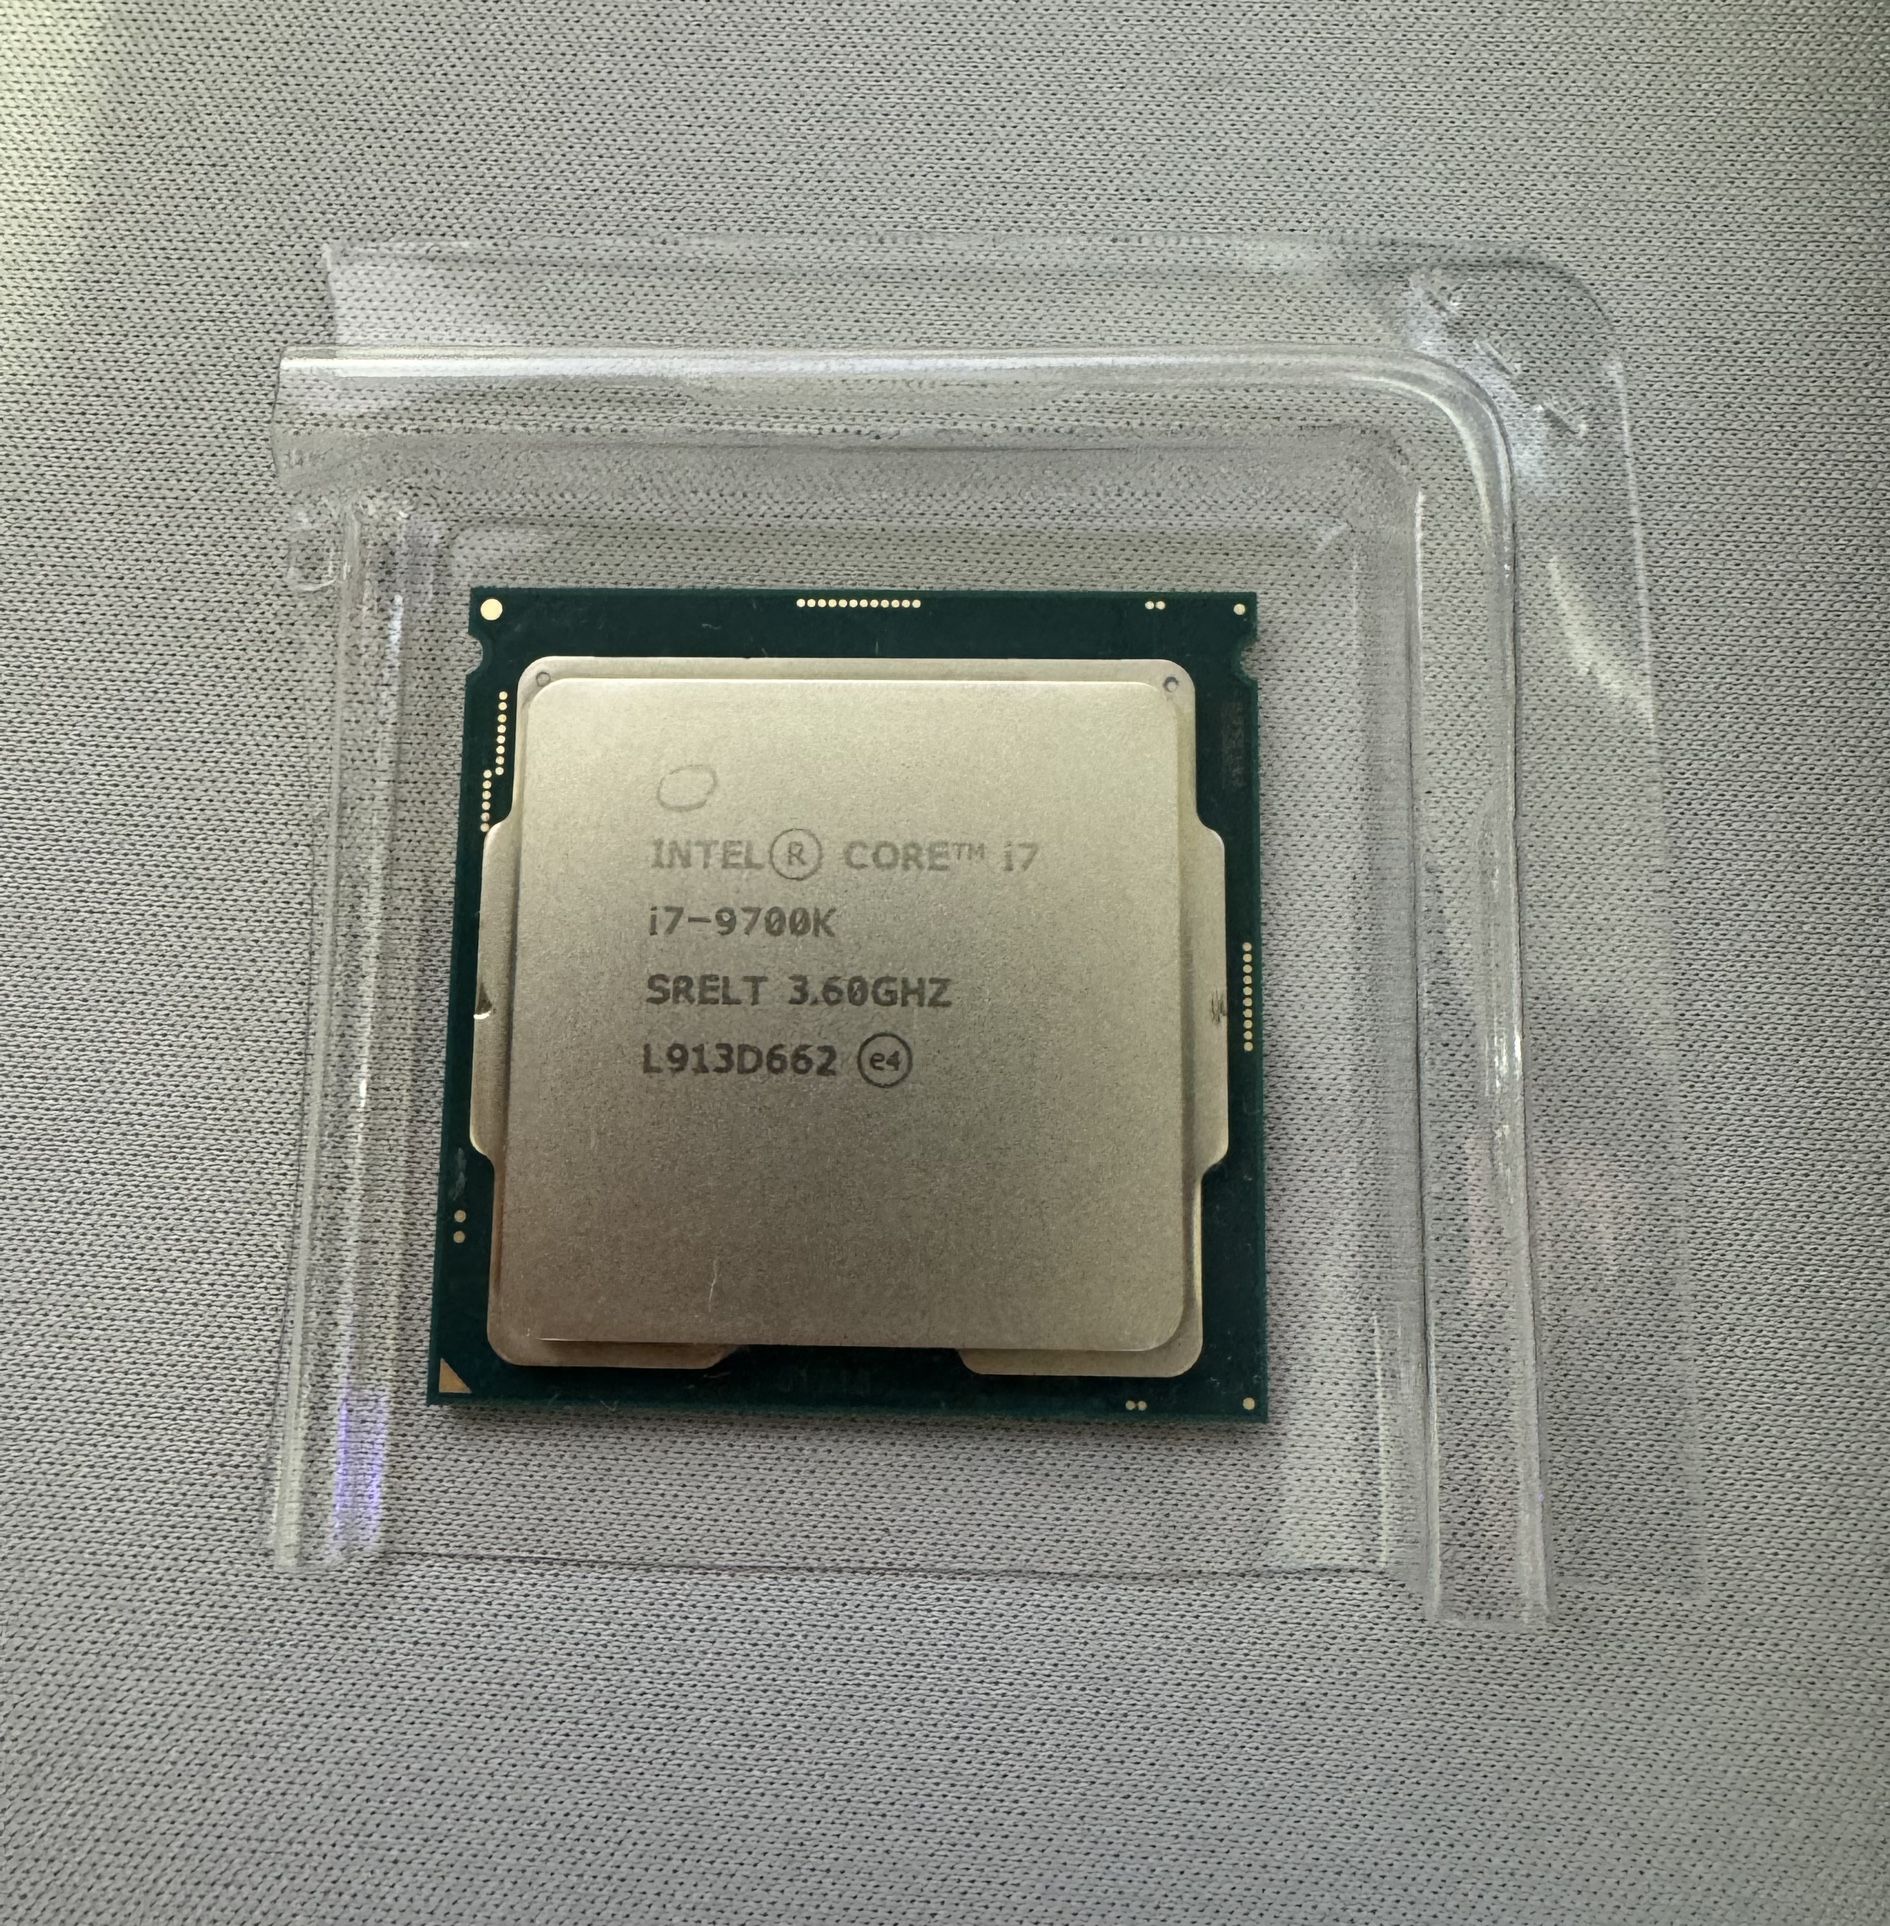 Intel i7-9700k CPU